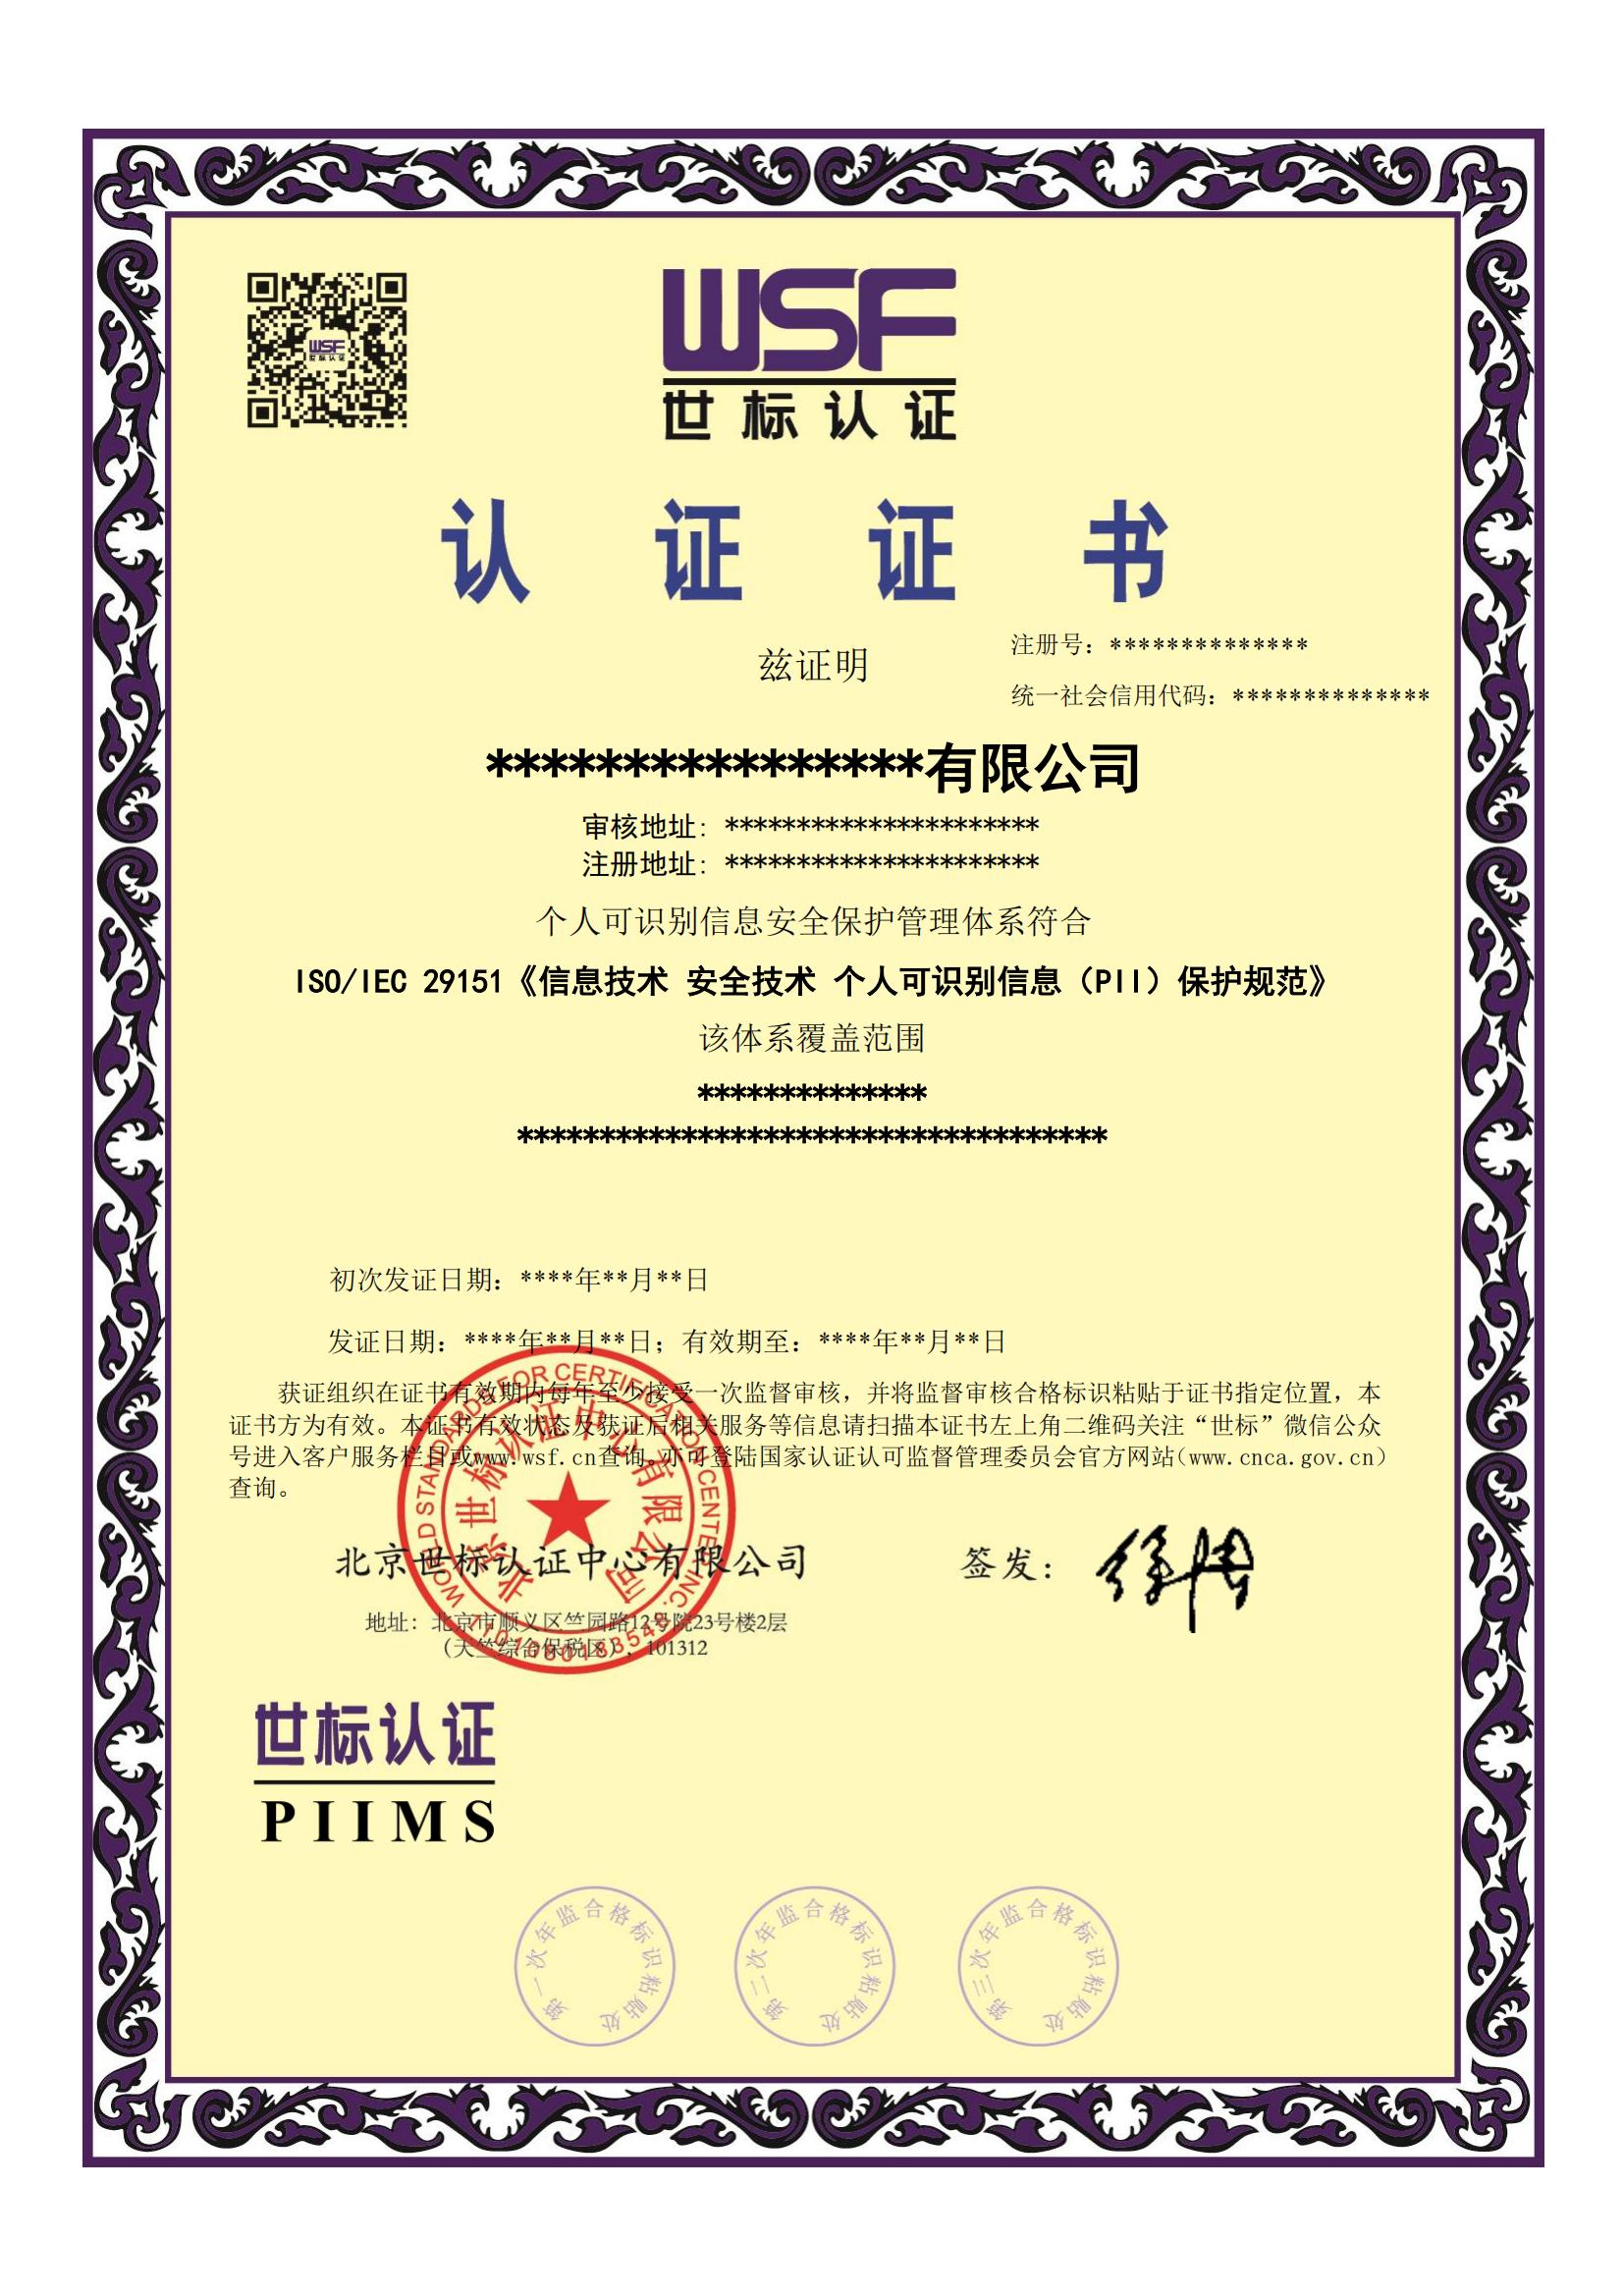 个人可识别信息安全保护管理体系证书样本-中文_00.jpg